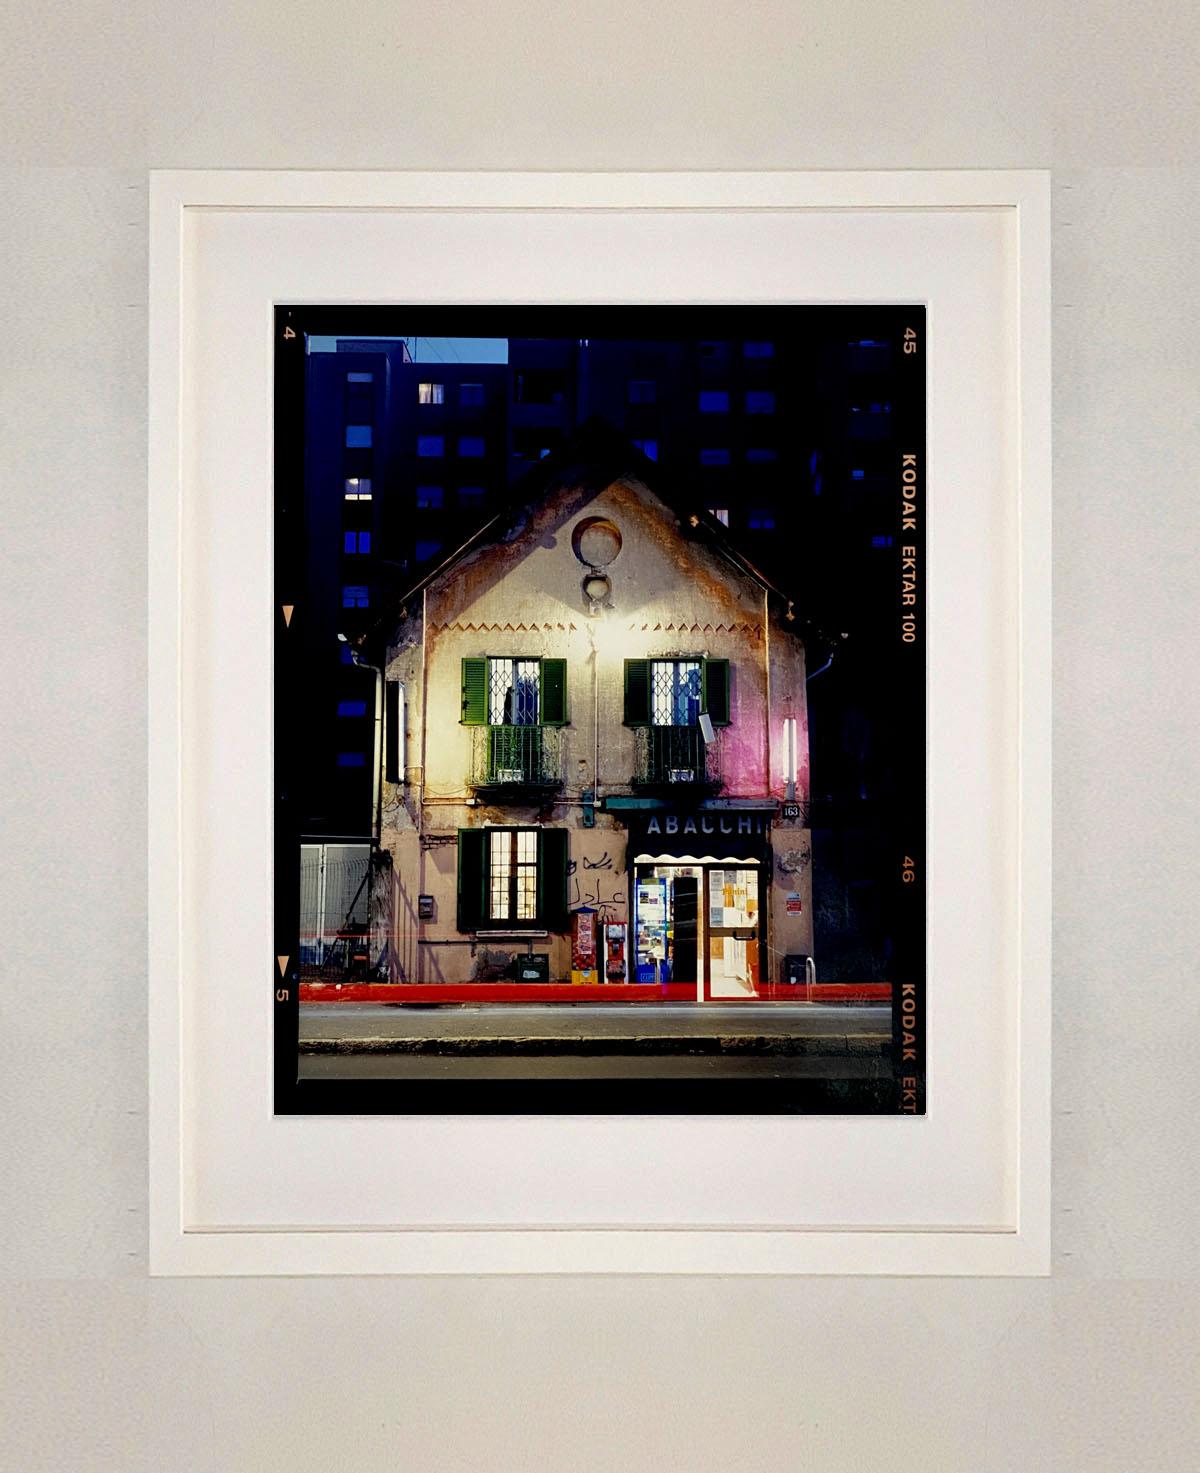 TABACCHI bei Nacht, Mailand – Architekturfotografie in Farbfotografie (Zeitgenössisch), Photograph, von Richard Heeps